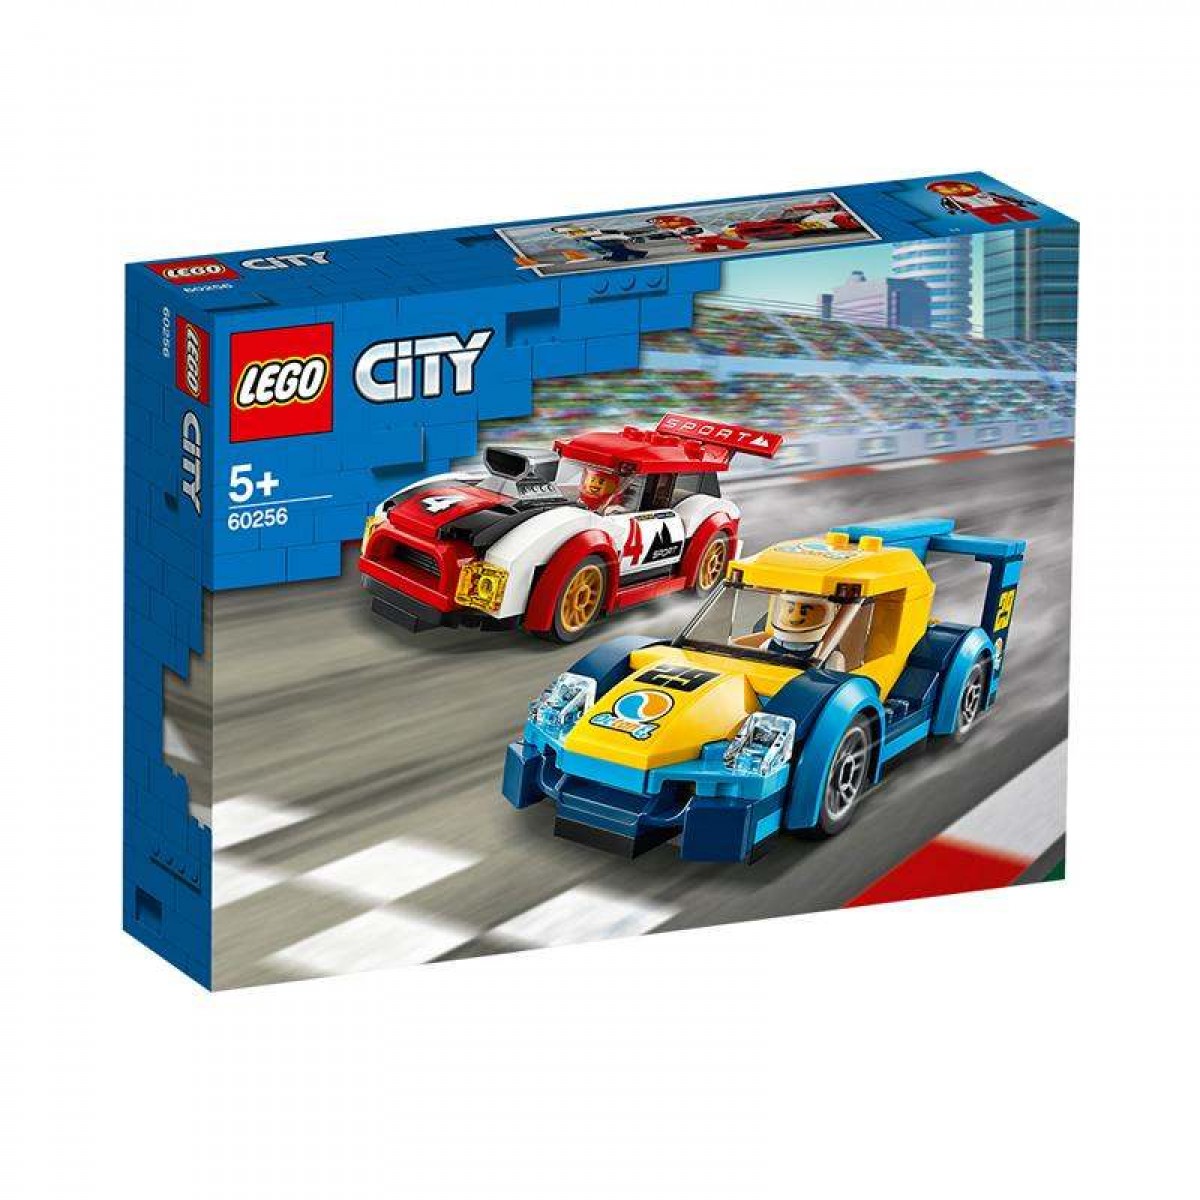 LEGO樂高城市系列賽車 60256男孩女孩拼插積木玩具